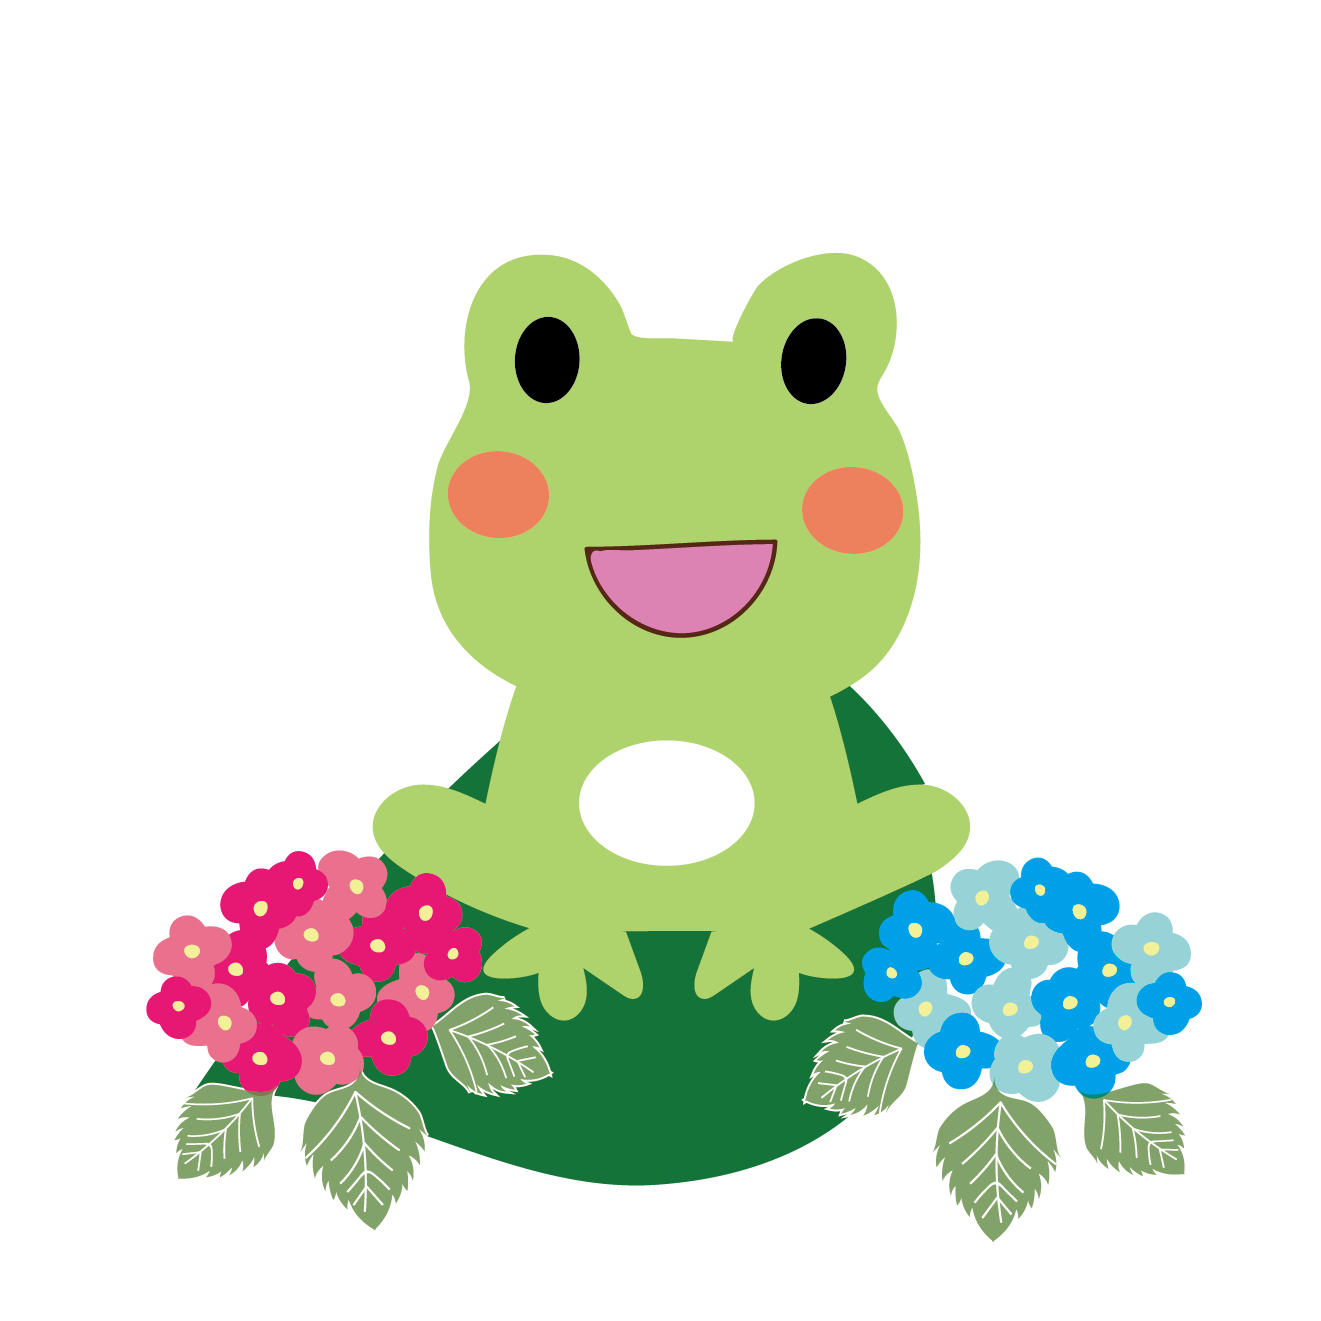 ニコニコ蛙 カエル と紫陽花のイラスト 梅雨 商用フリー 無料